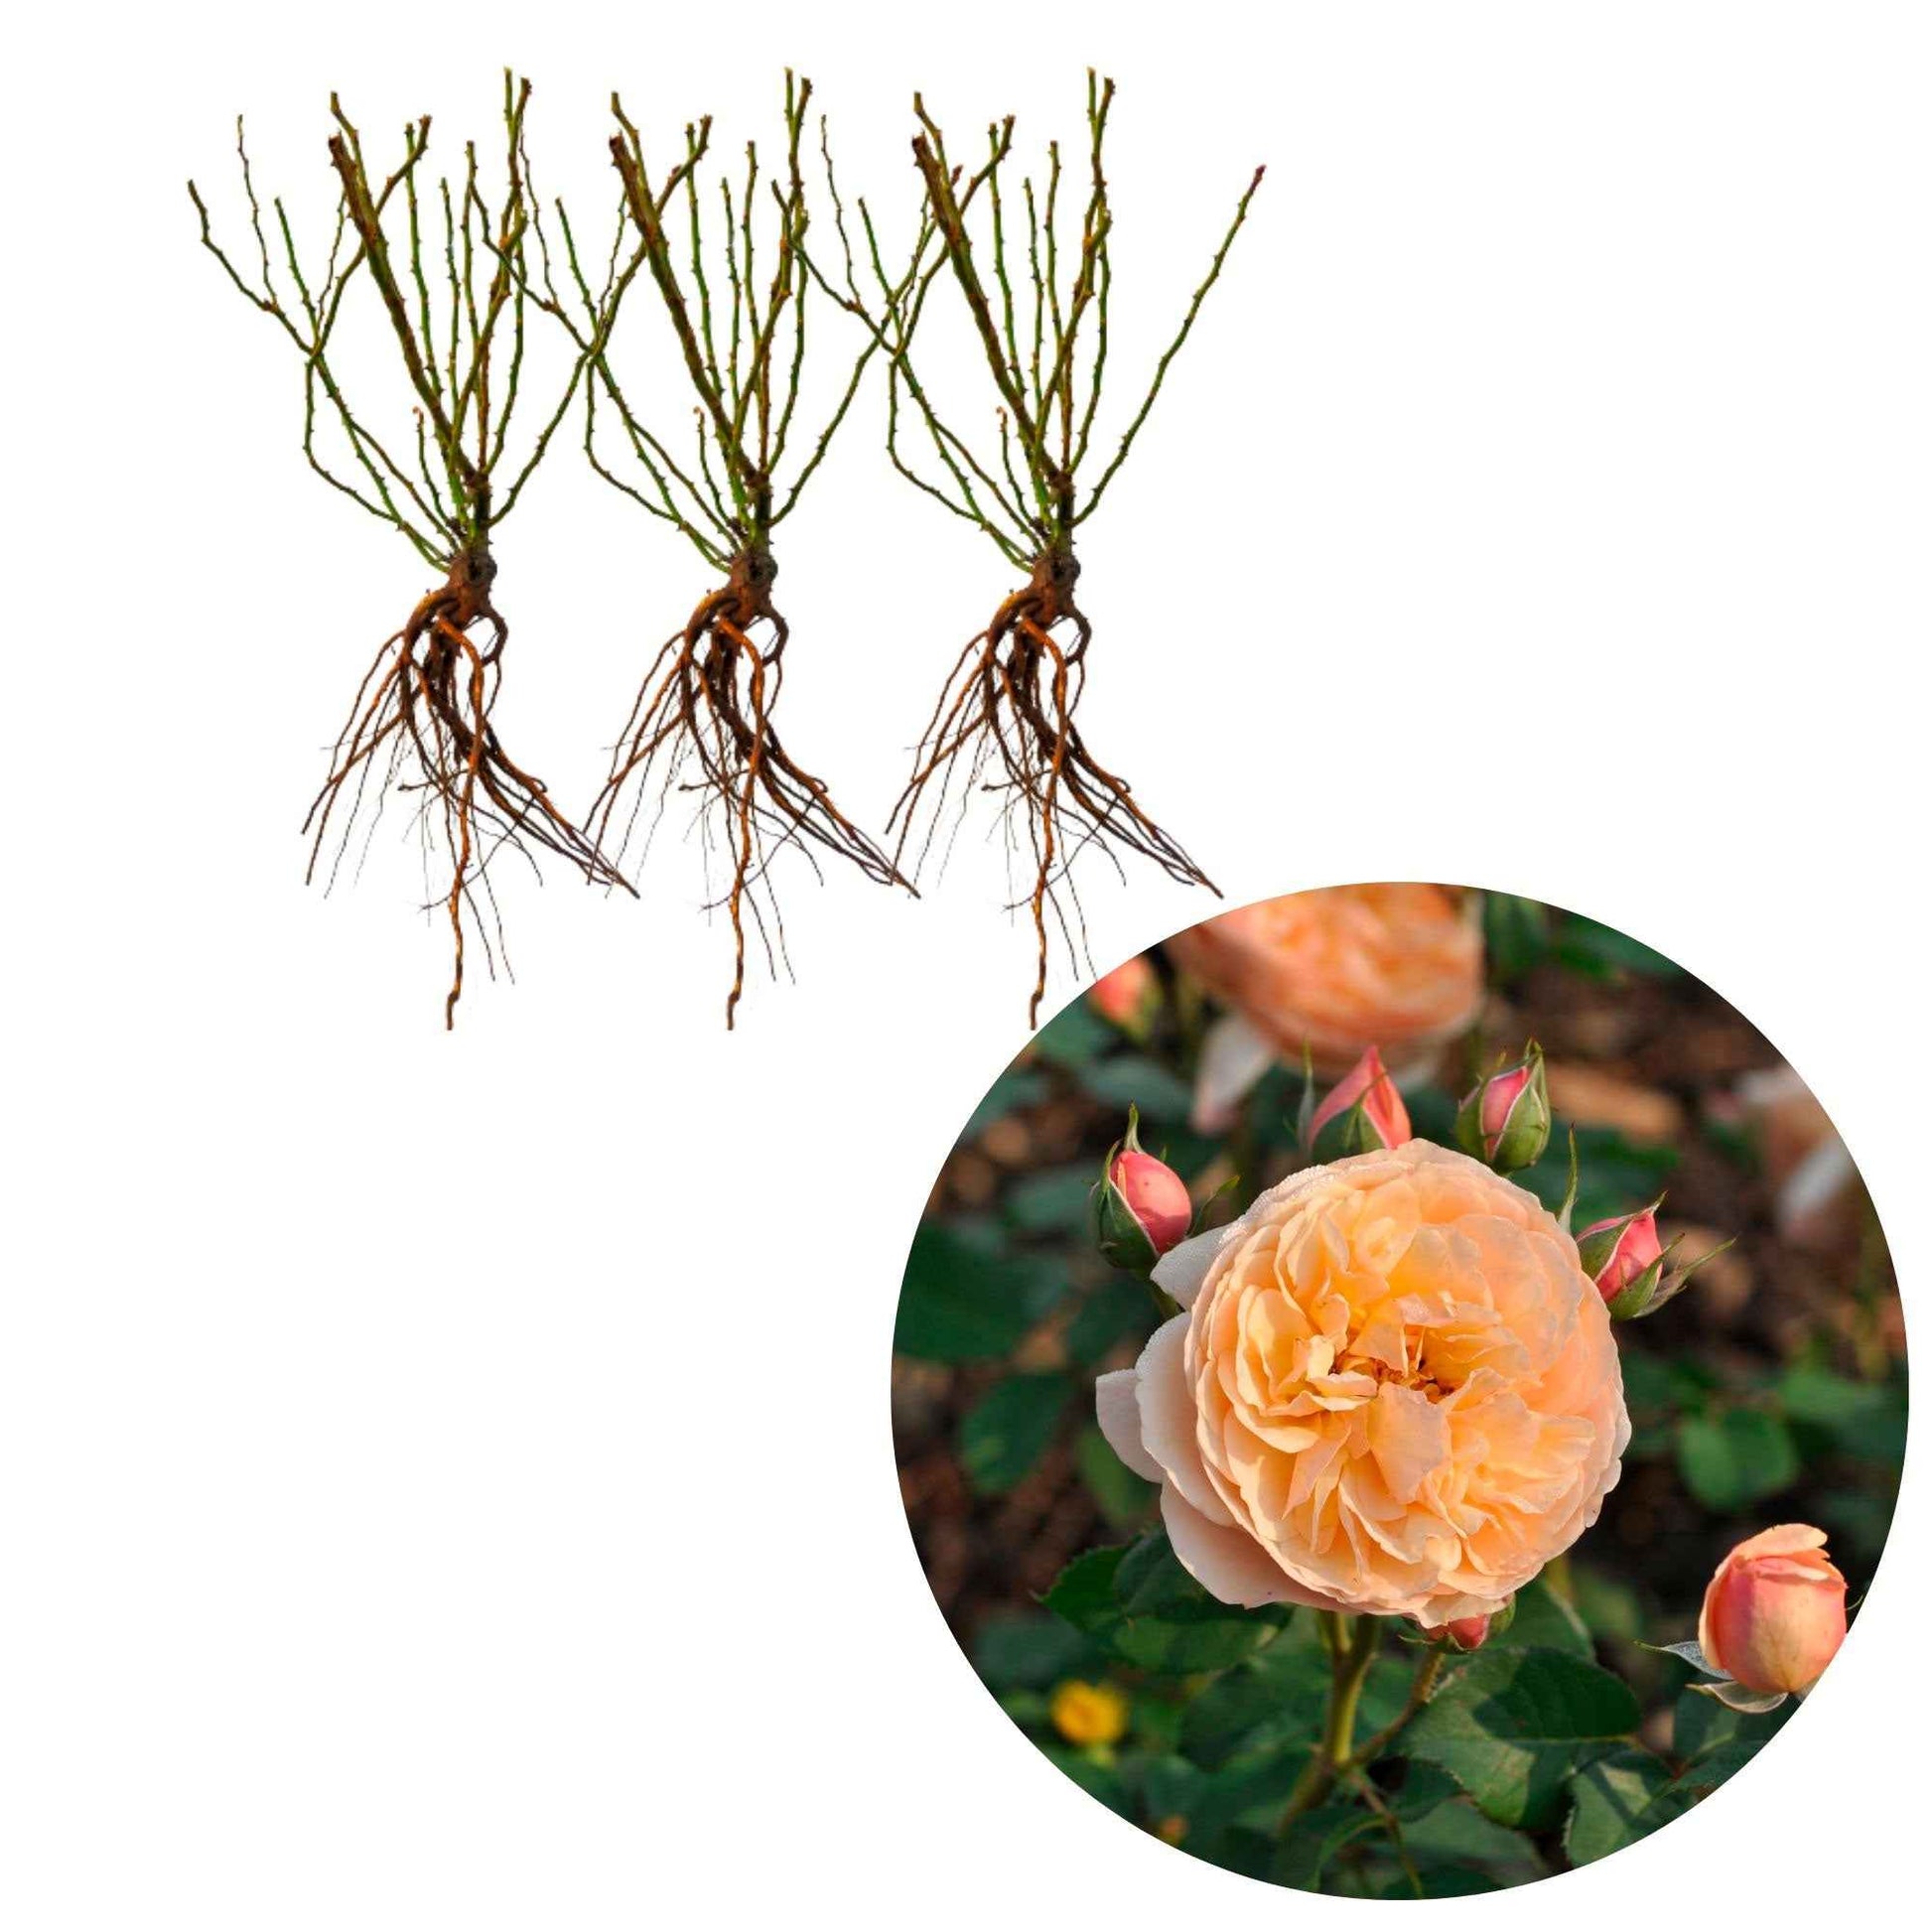 3x Rosen Rosa 'Eveline Wild'® floribunda Rosa - Winterhart  - Wurzelnackte Pflanzen - Pflanzensorten